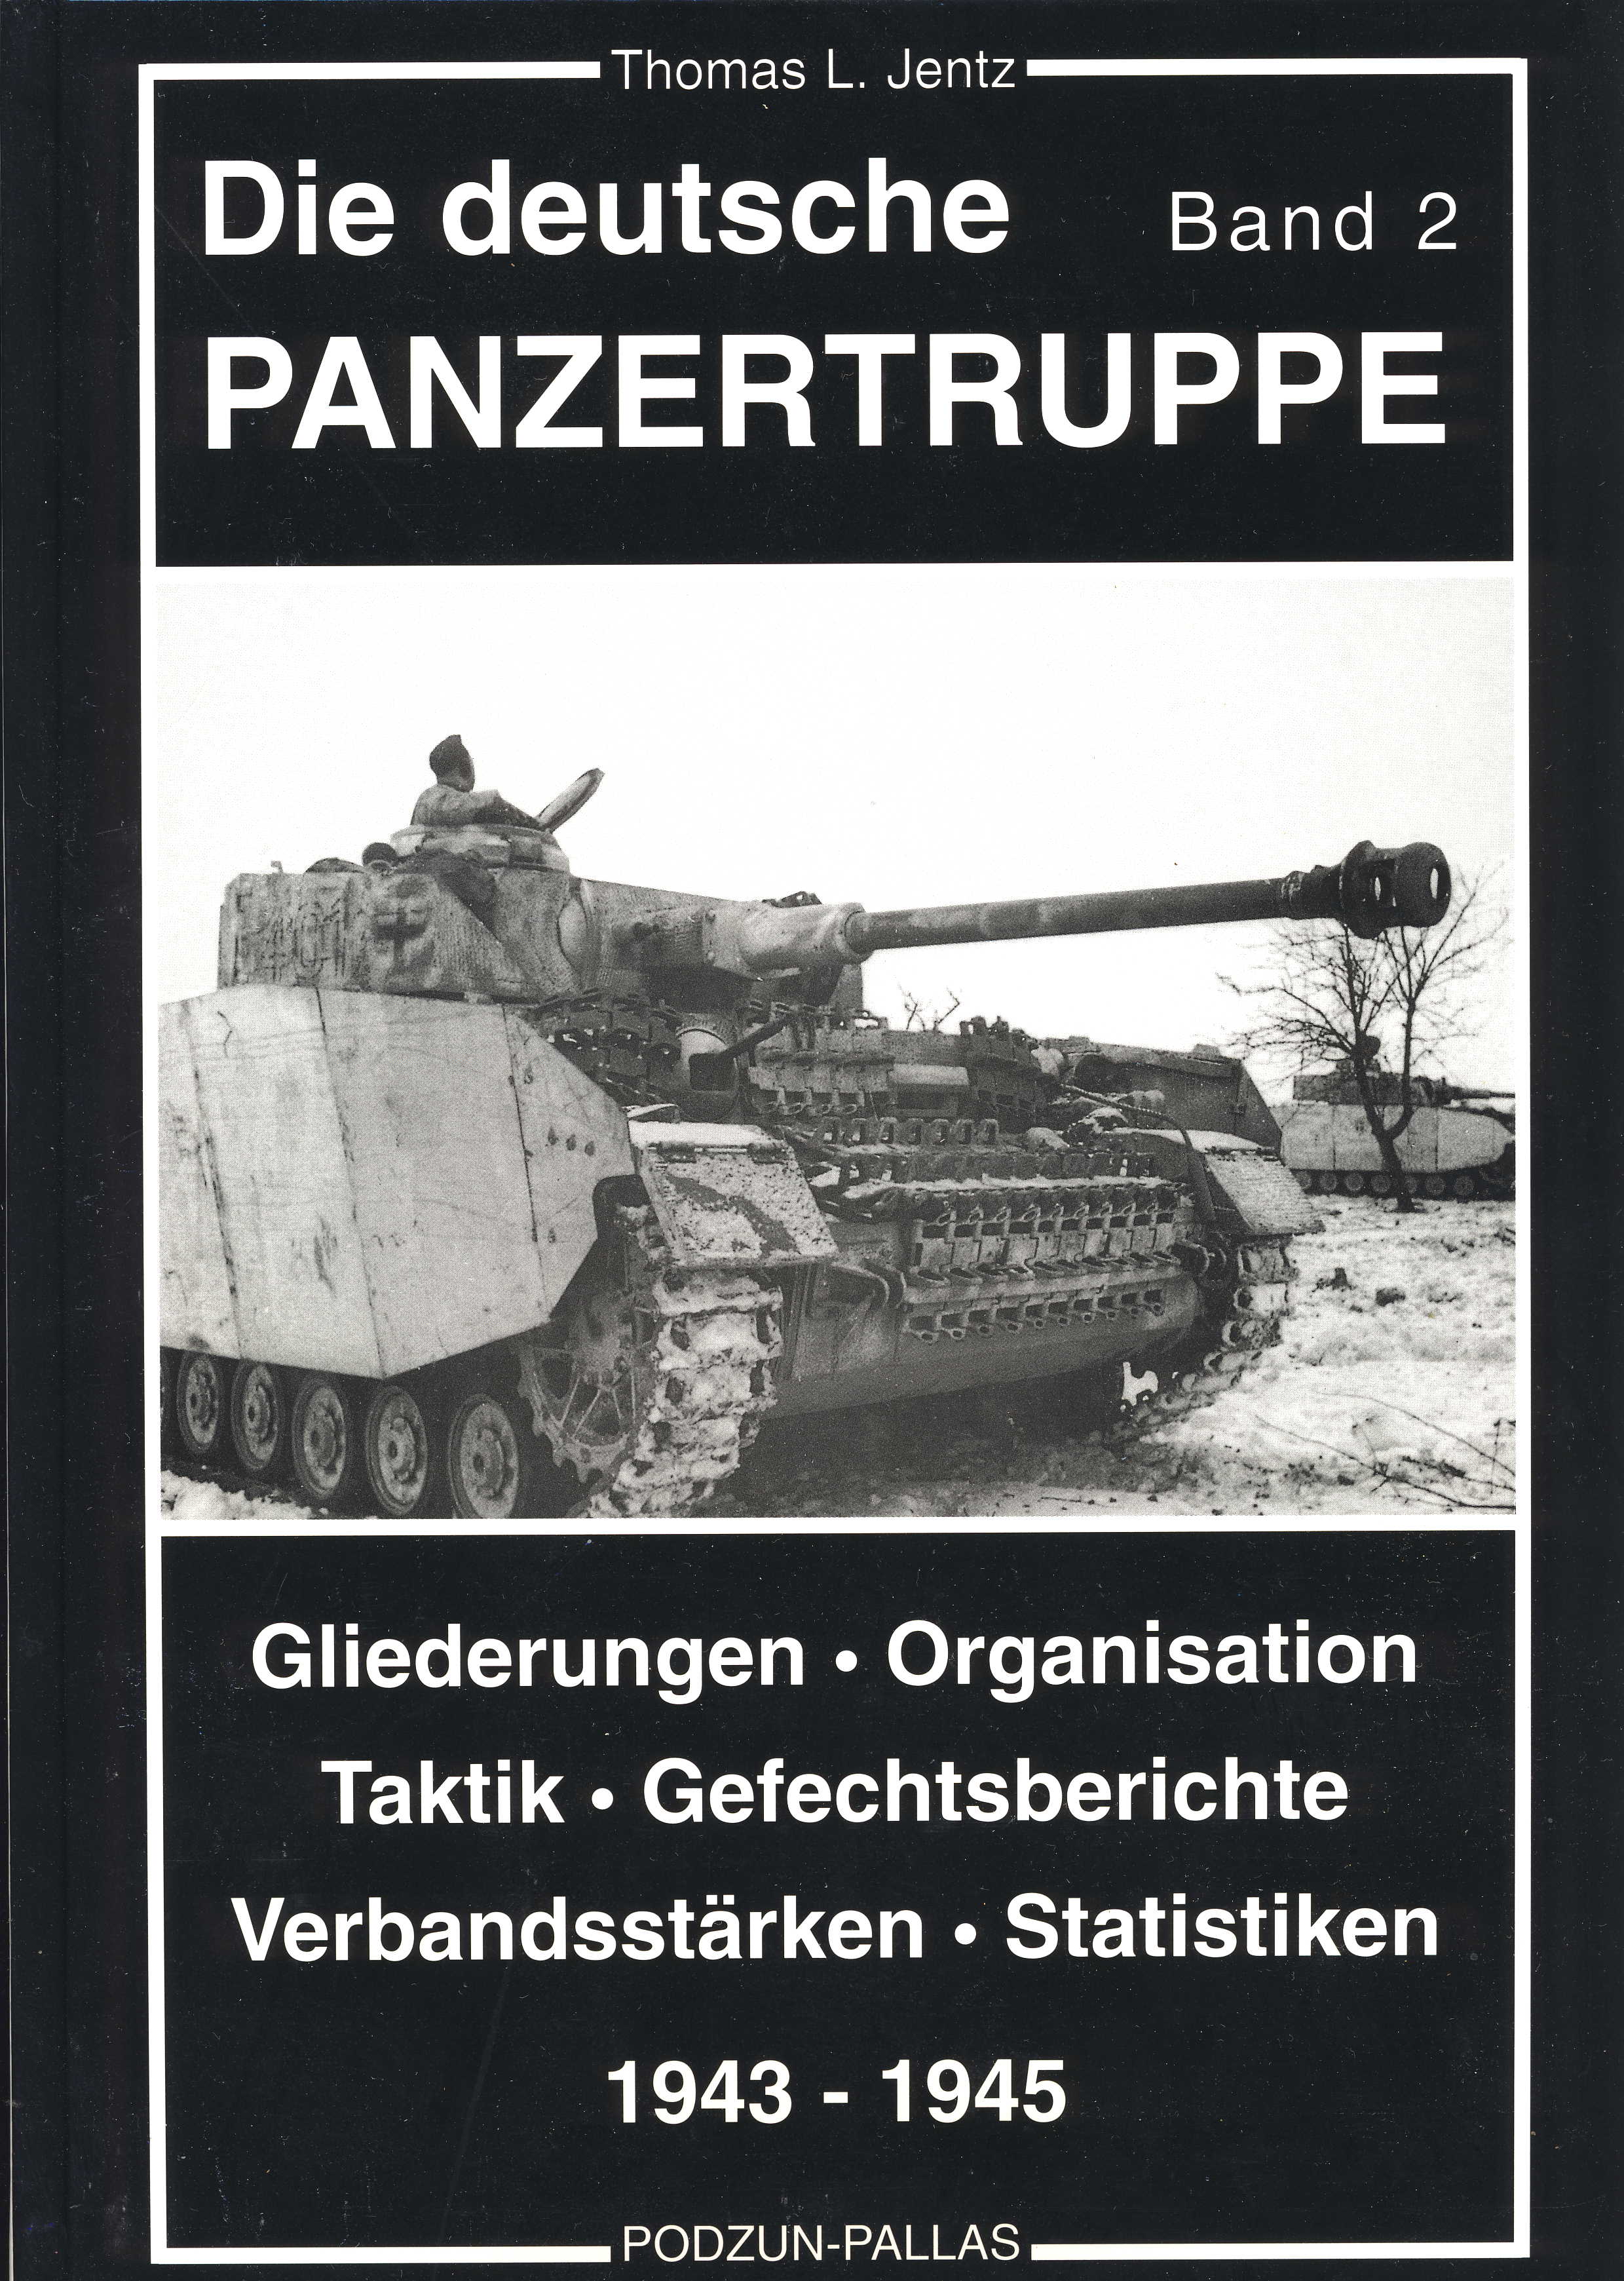 Jentz, Thomas L. Die deutsche Panzertruppe Band 2 Entstehung und